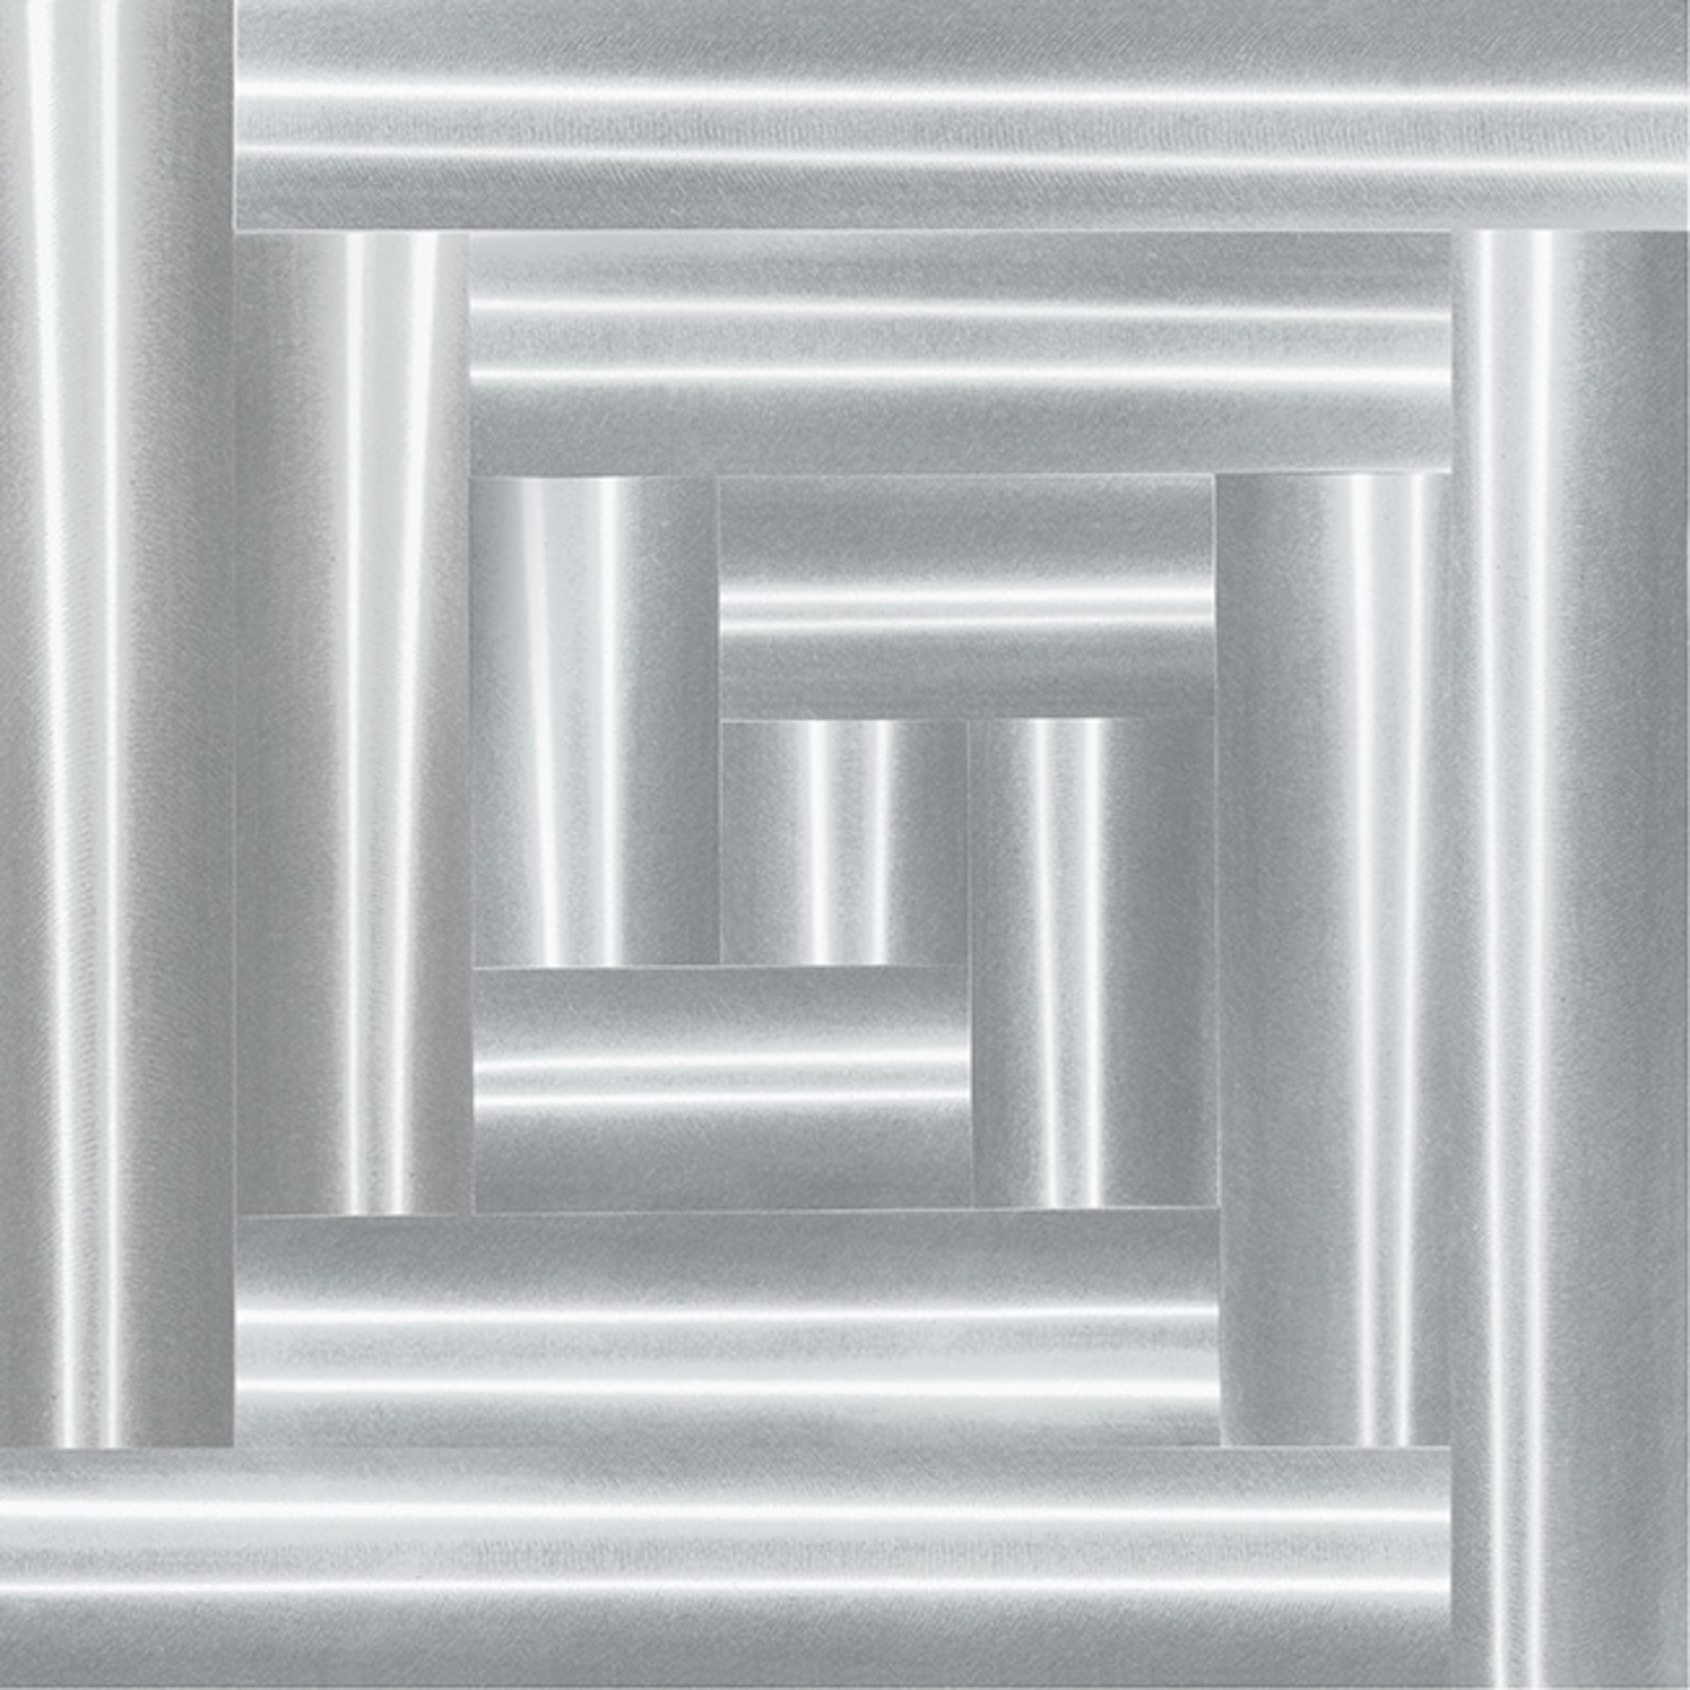 superficie a testura vibratile 1.2.4 alluminum. 1962, 70x70 cm © Centro Studi e Ricerche Getulio Alviani 